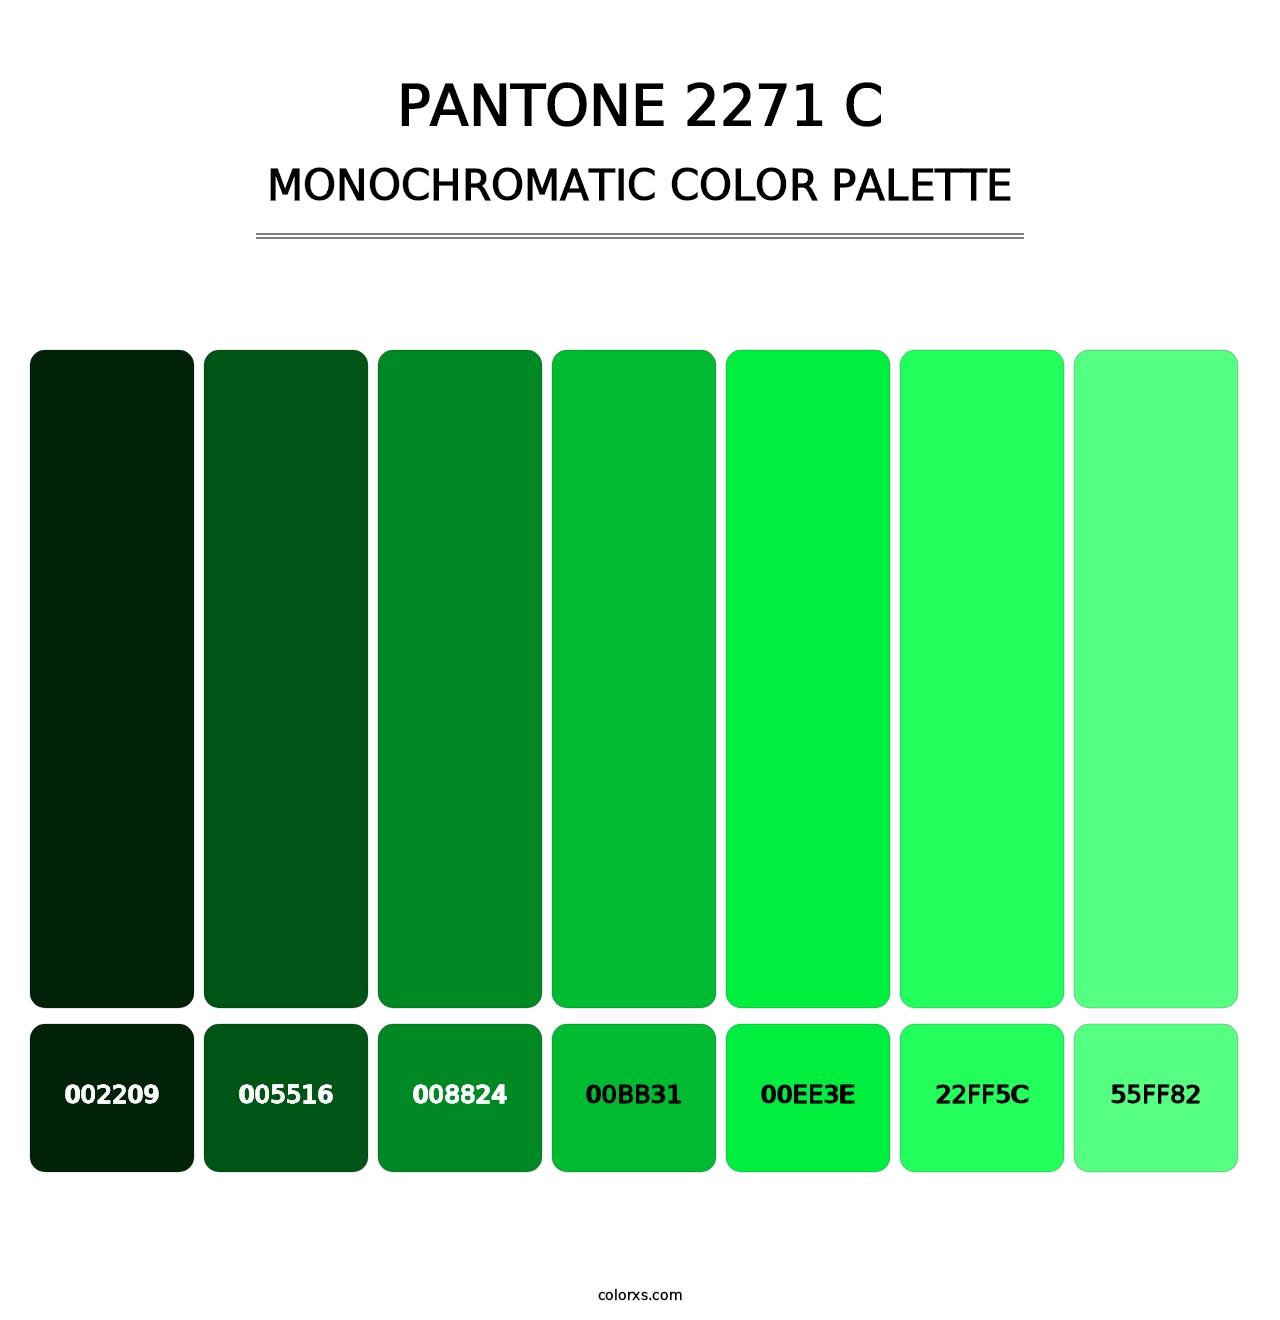 PANTONE 2271 C - Monochromatic Color Palette